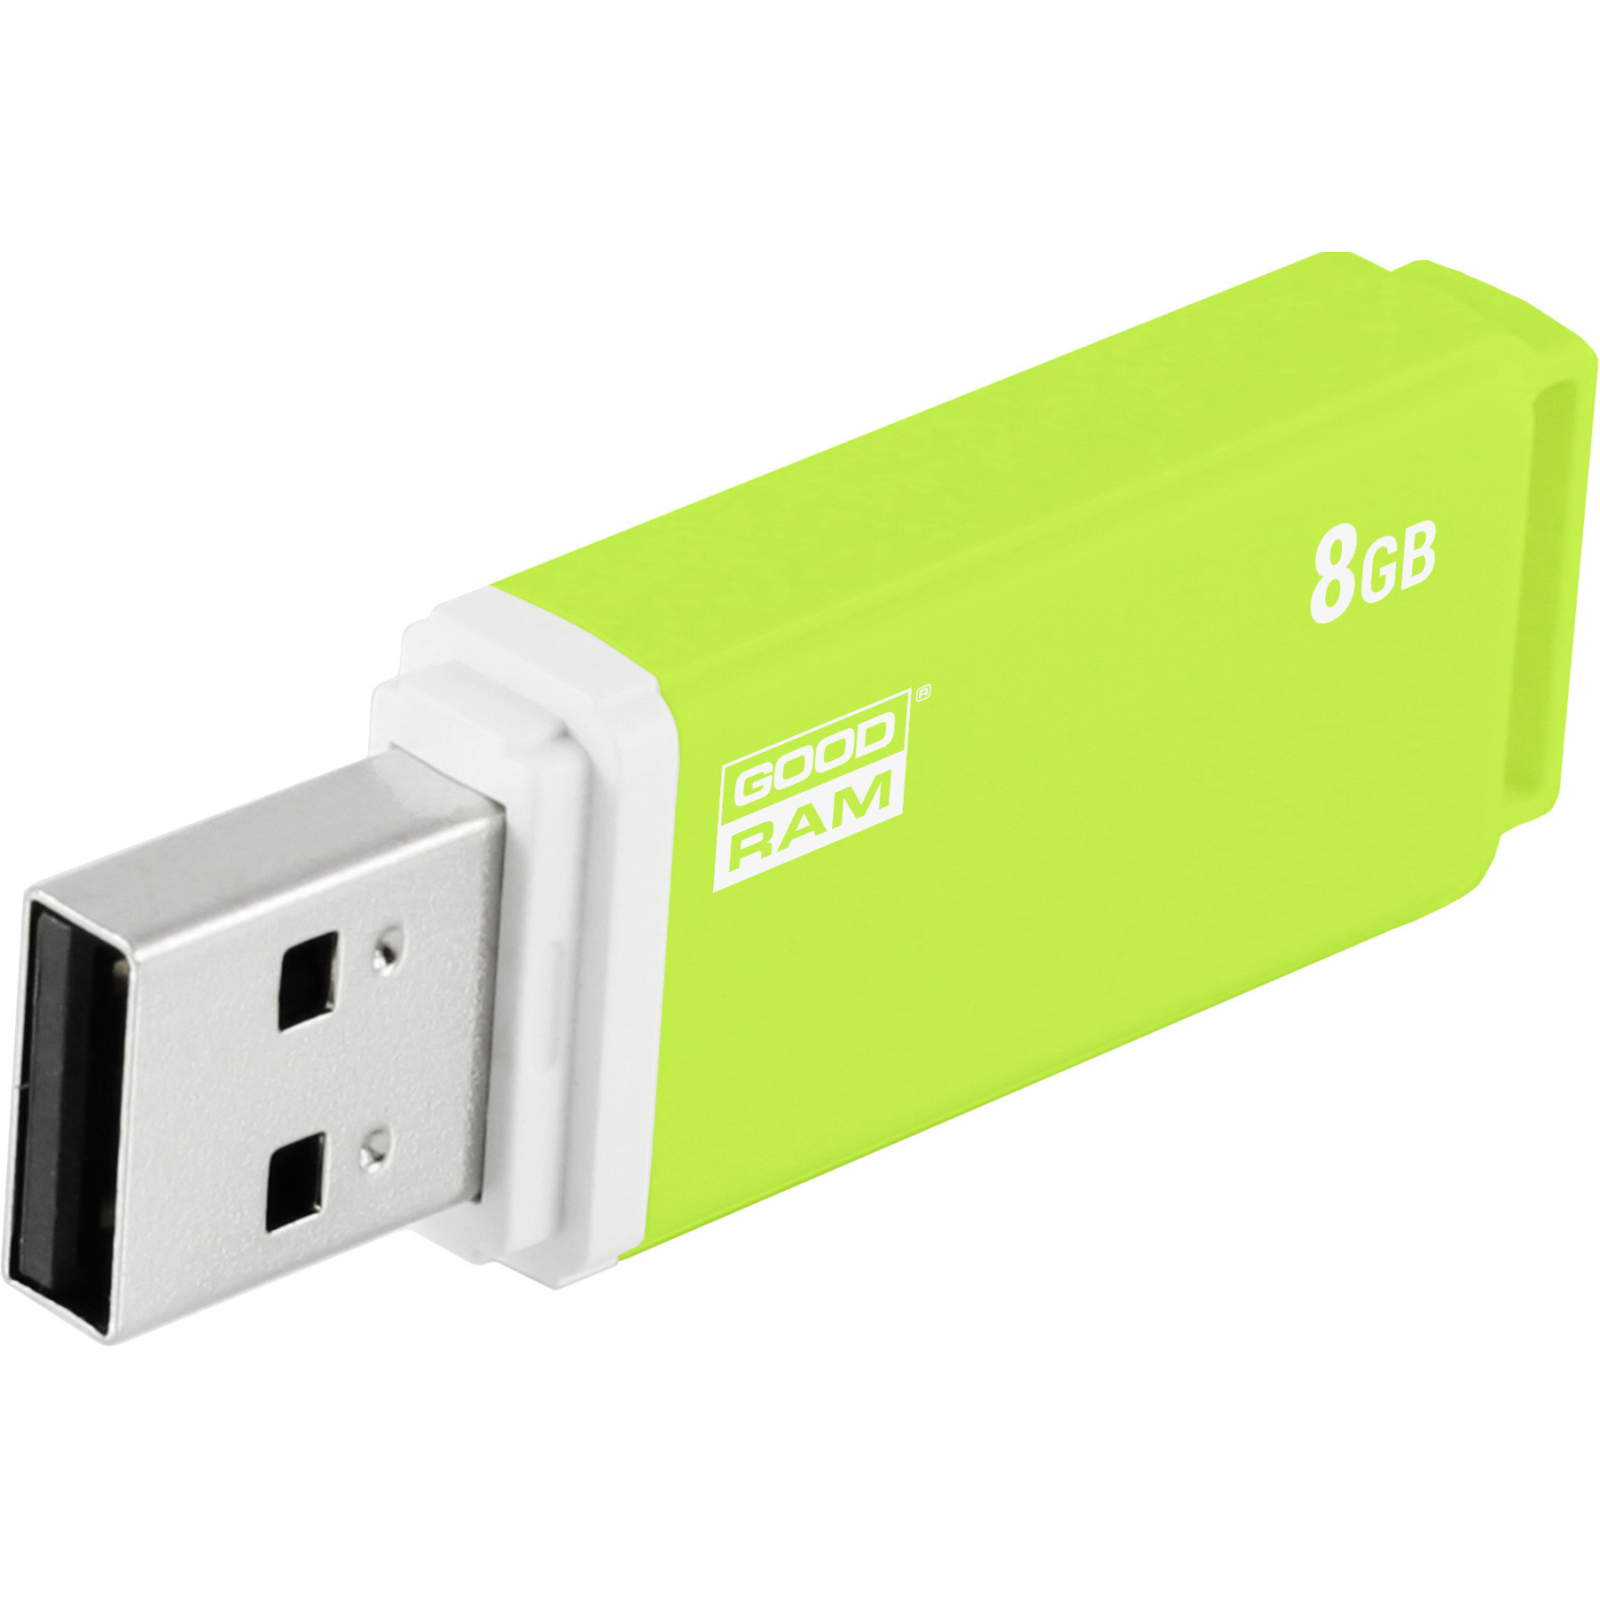 USB флеш накопитель Goodram 8GB UMO2 Orange Green USB 2.0 (UMO2-0080OGR11) изображение 5